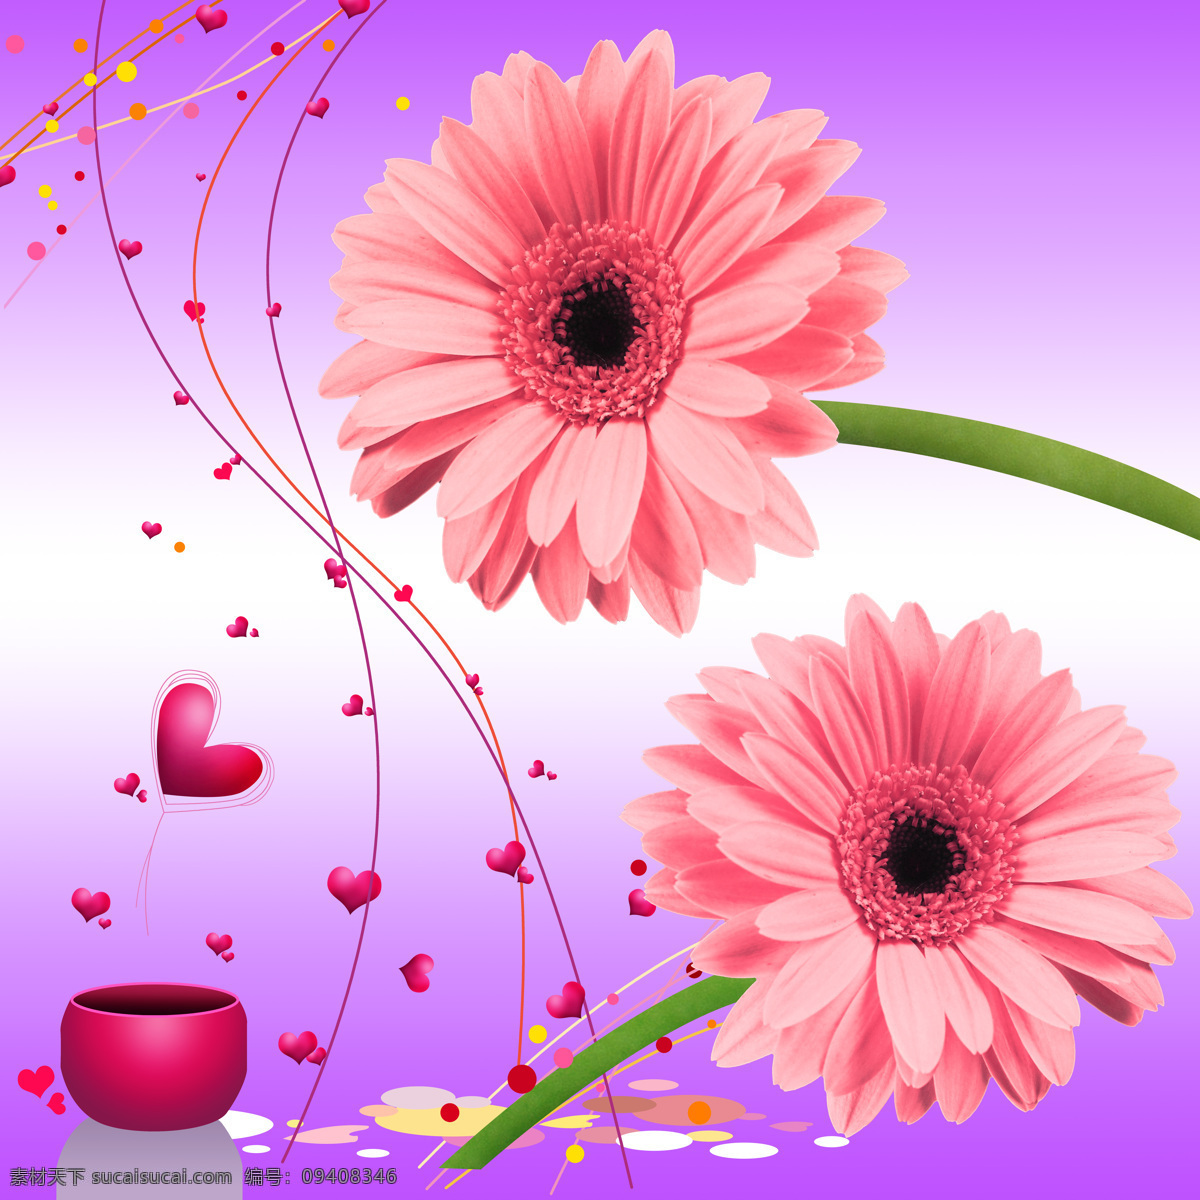 粉色 可爱 花朵 背景 墙 自然 风景 花卉 美丽 清新 免费素材下载 背景墙 背景图 装饰画 甜美 爱心 雏菊 紫色